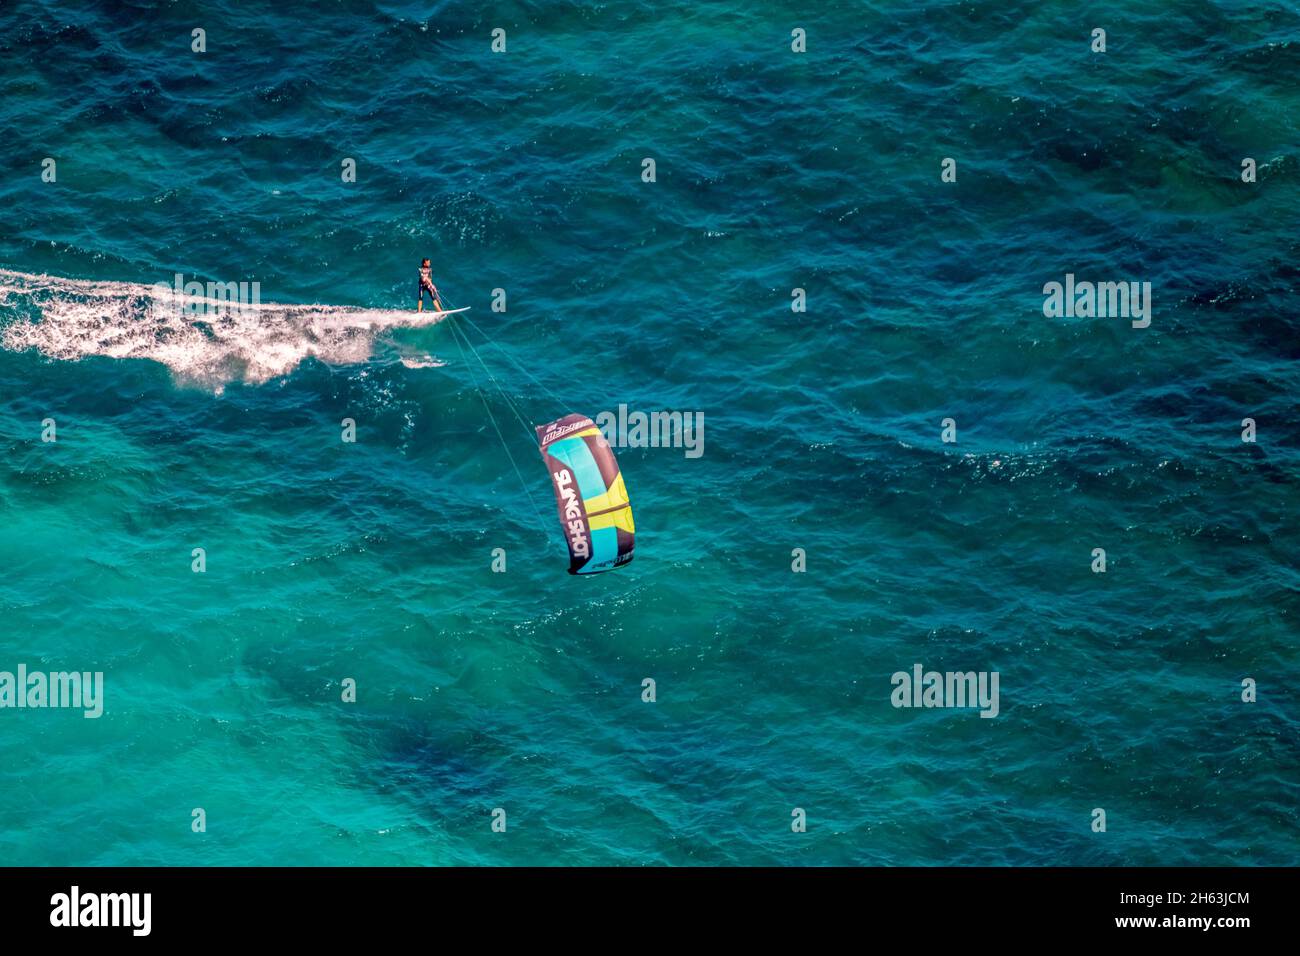 vista aerea,kitesurfers nella baia di alcudia,mallorca,isole baleari,spagna Foto Stock